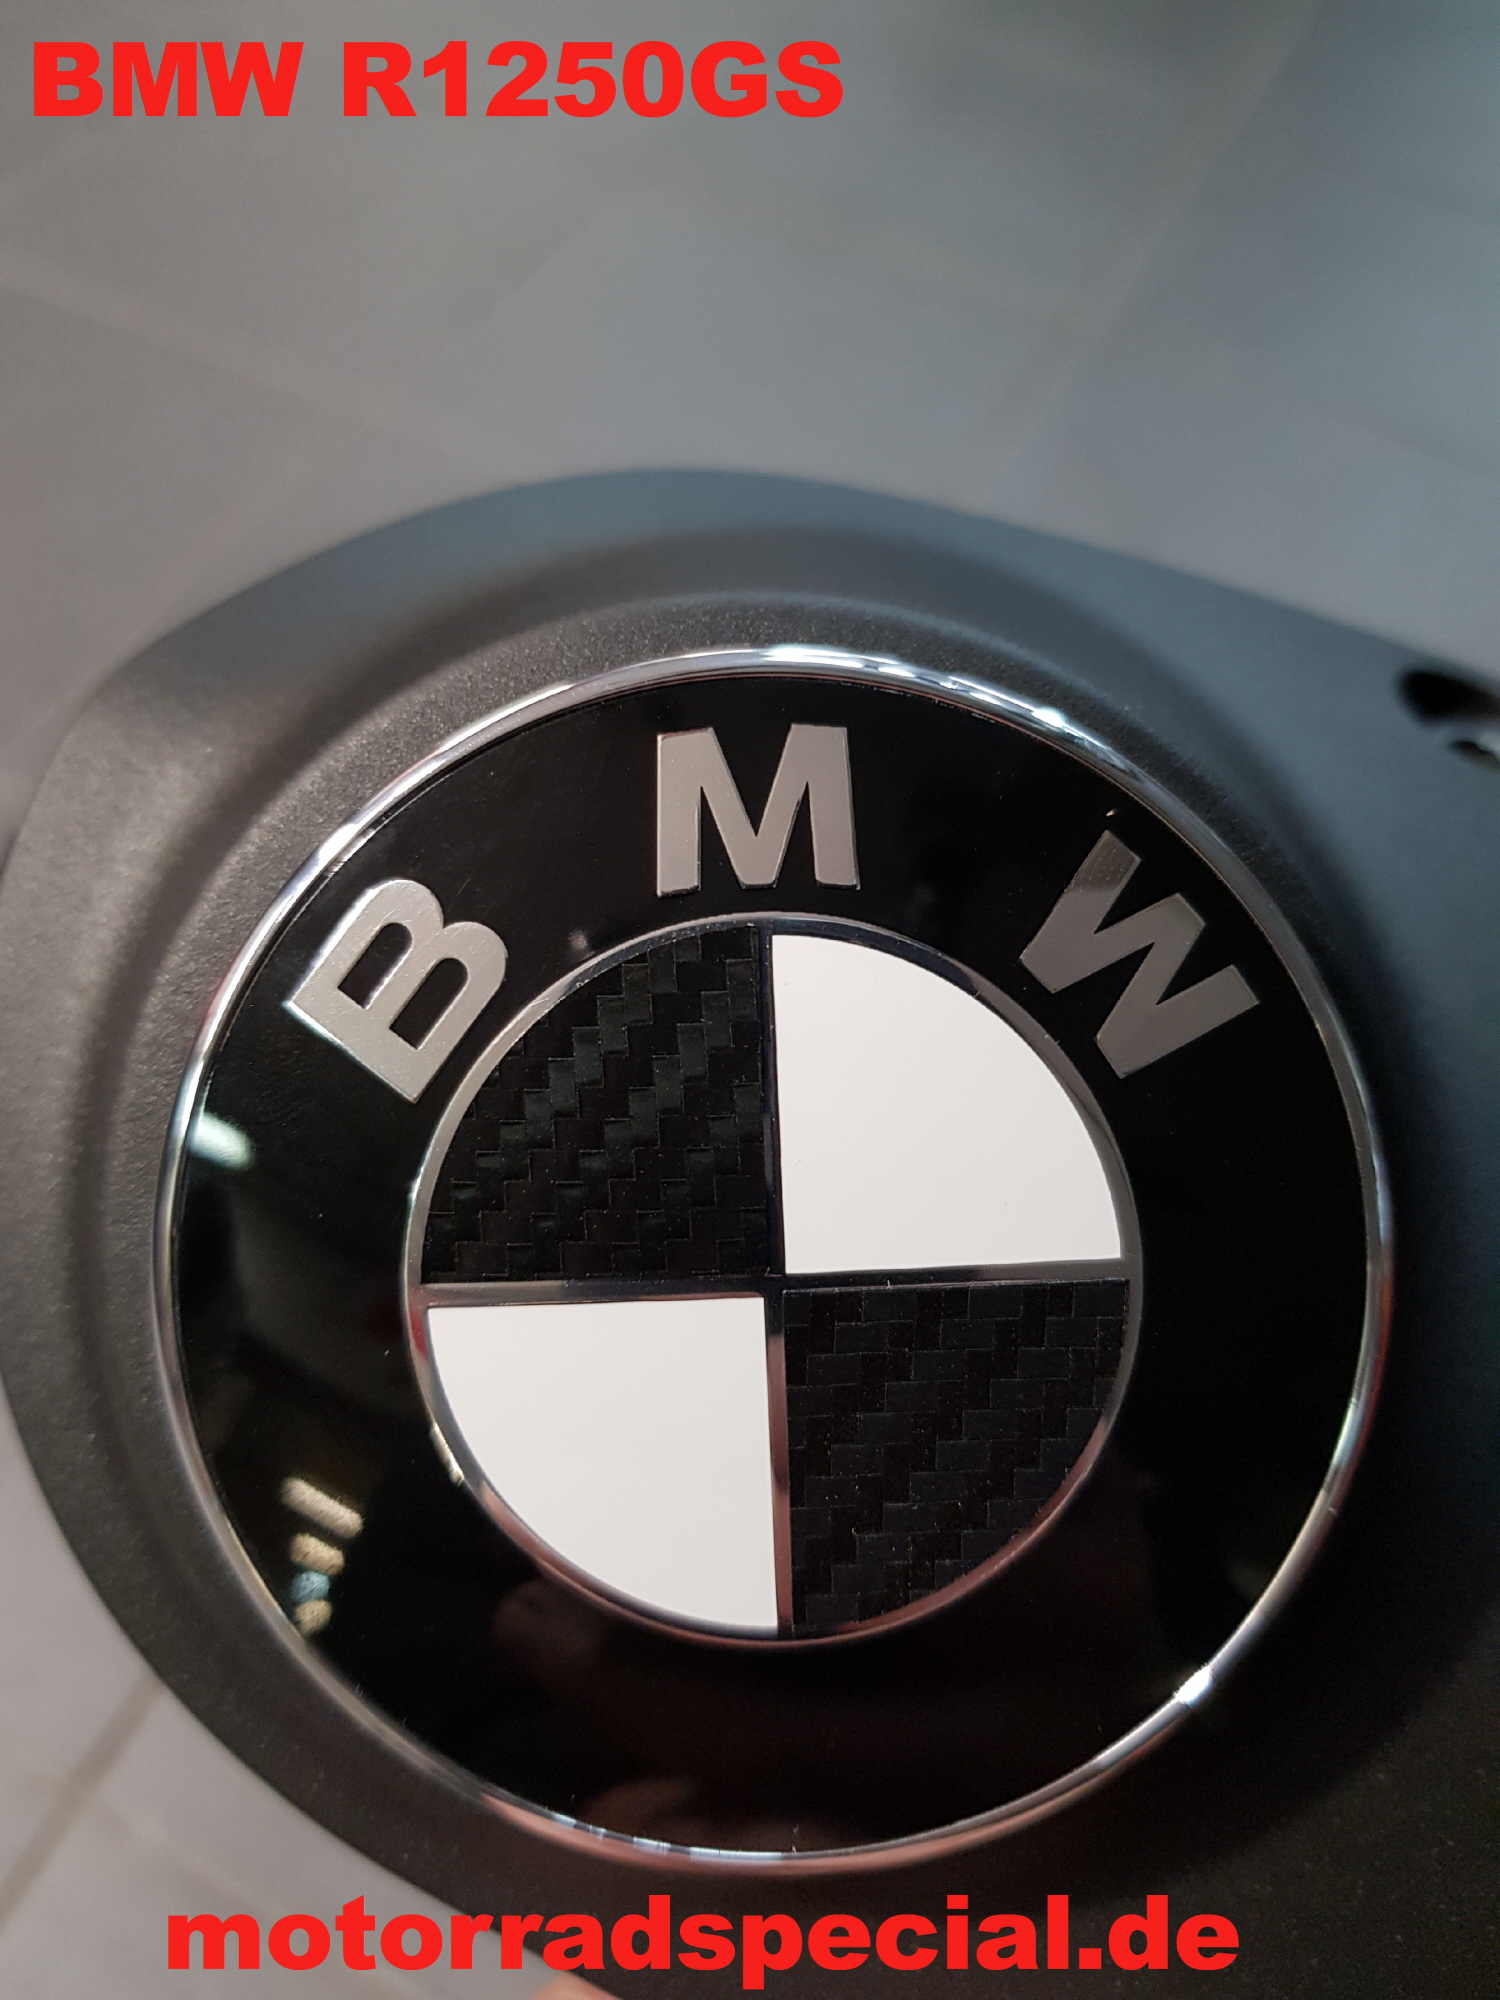 BMW Sticker Carbon pro Fahrzeug - Motorrad Special - Ihre Motorradwerkstatt  in Lünen, Werne, Dortmund und Waltrop